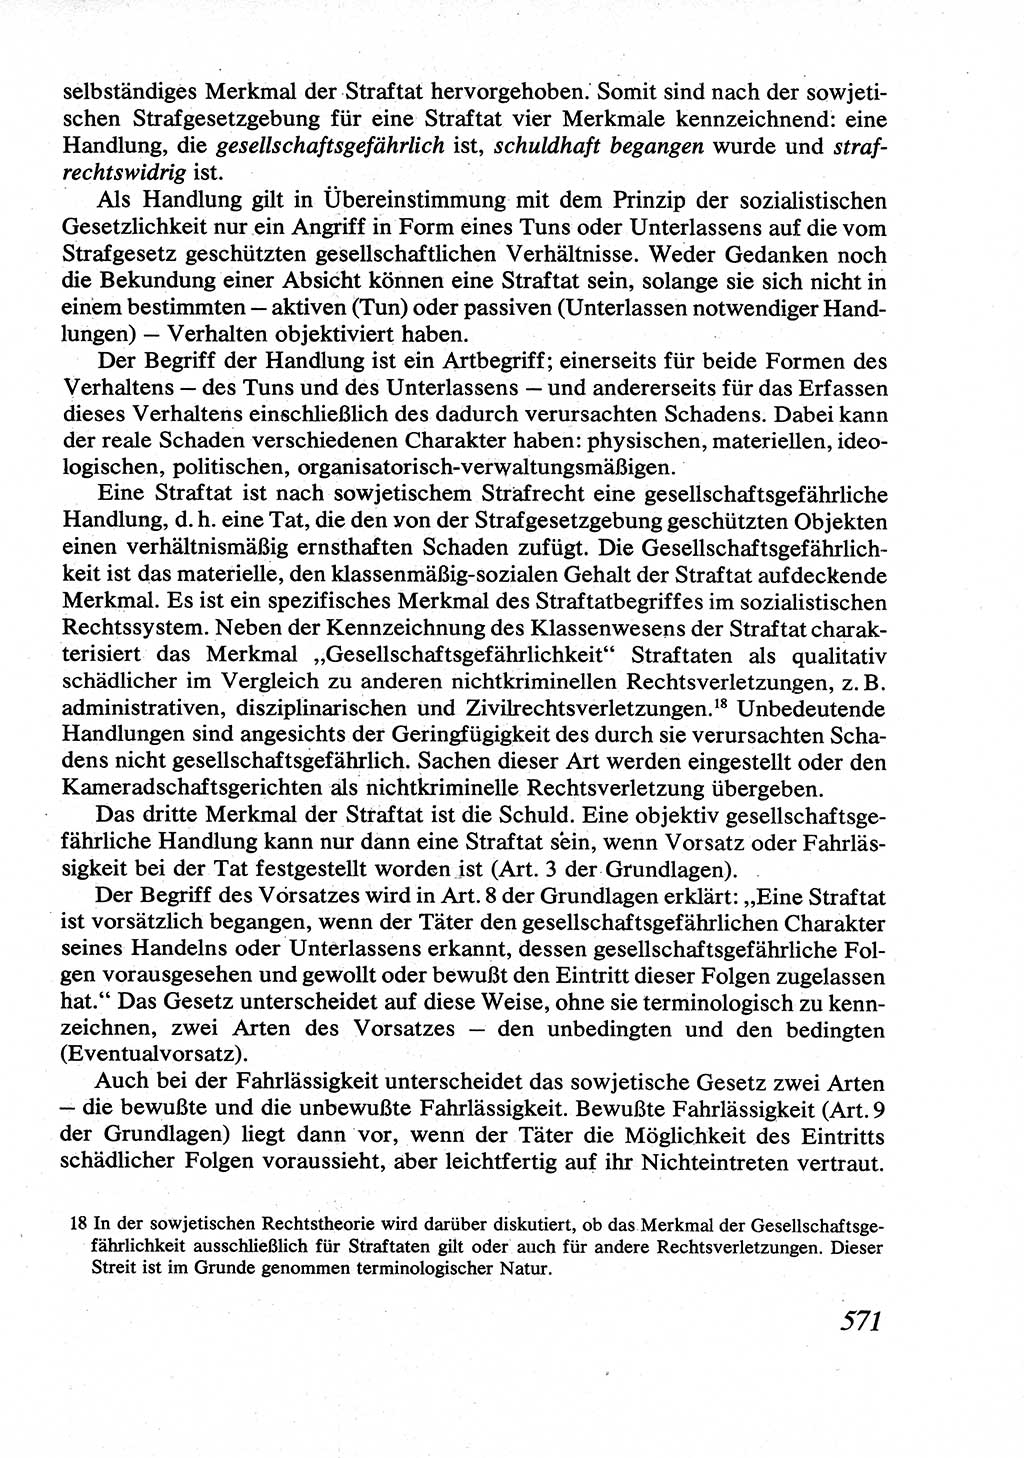 Strafrecht [Deutsche Demokratische Republik (DDR)], Allgemeiner Teil, Lehrbuch 1976, Seite 571 (Strafr. DDR AT Lb. 1976, S. 571)